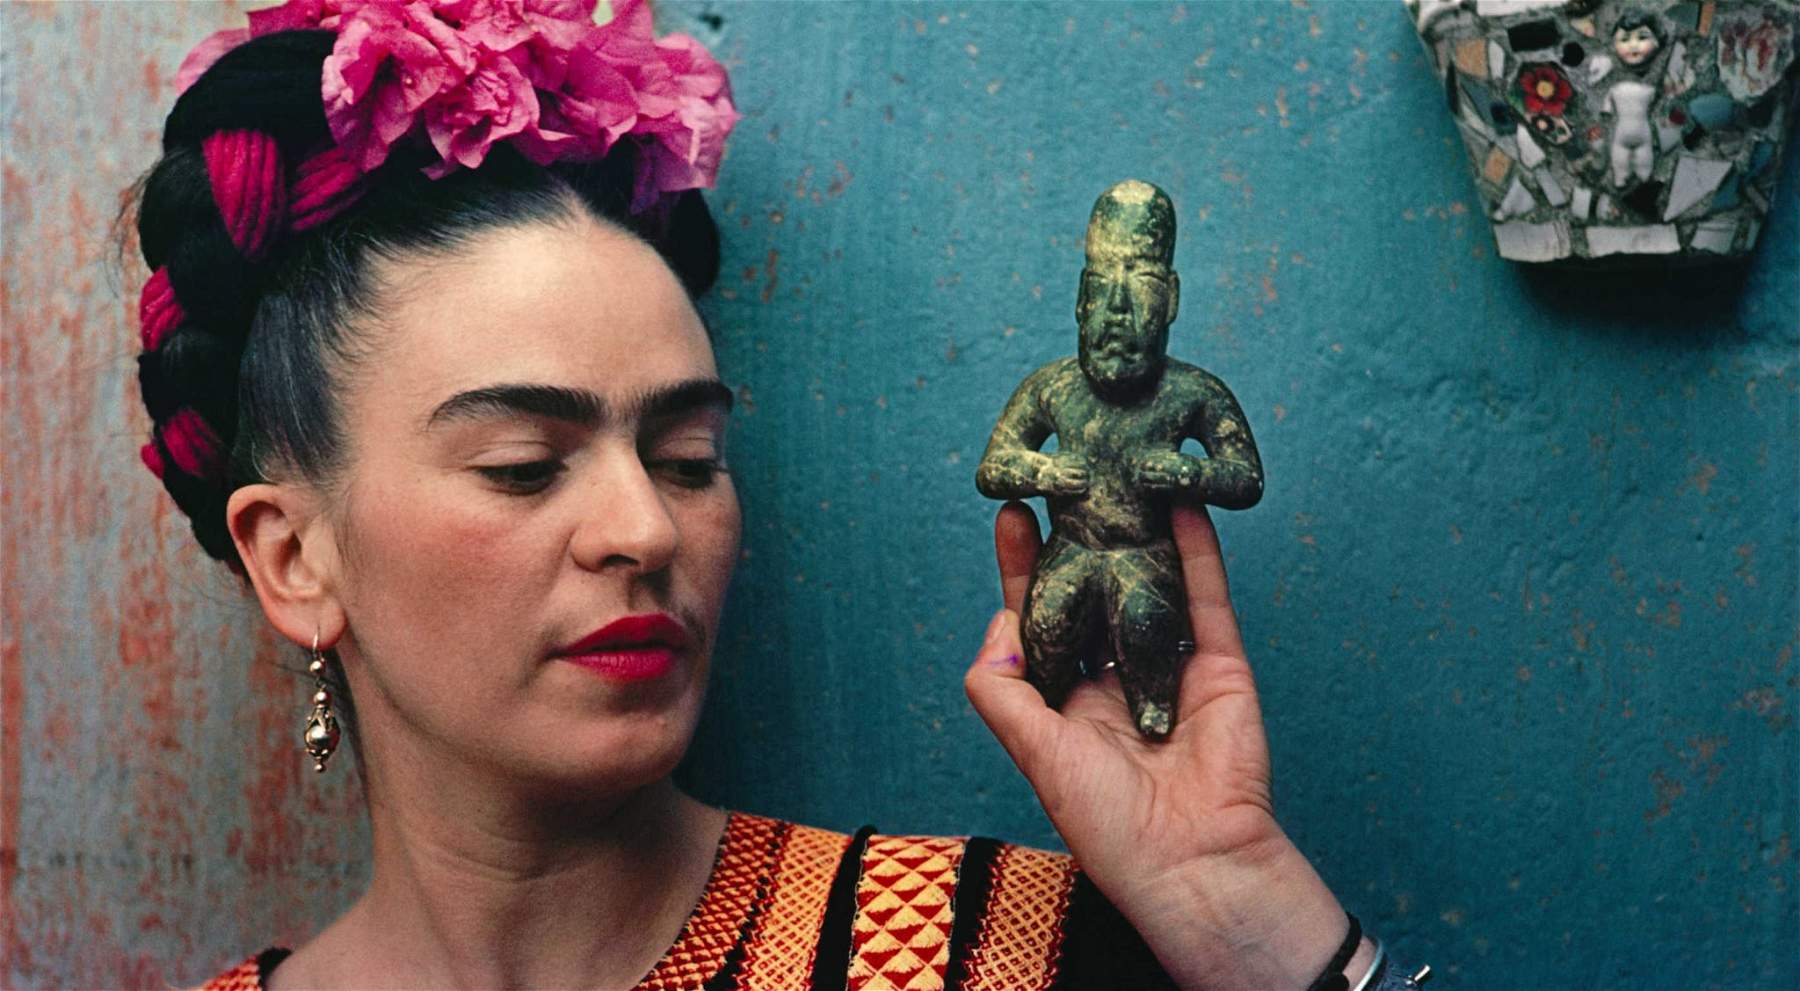 Hongrie, l'exposition Frida Kahlo critiquée et accusée de propagande communiste